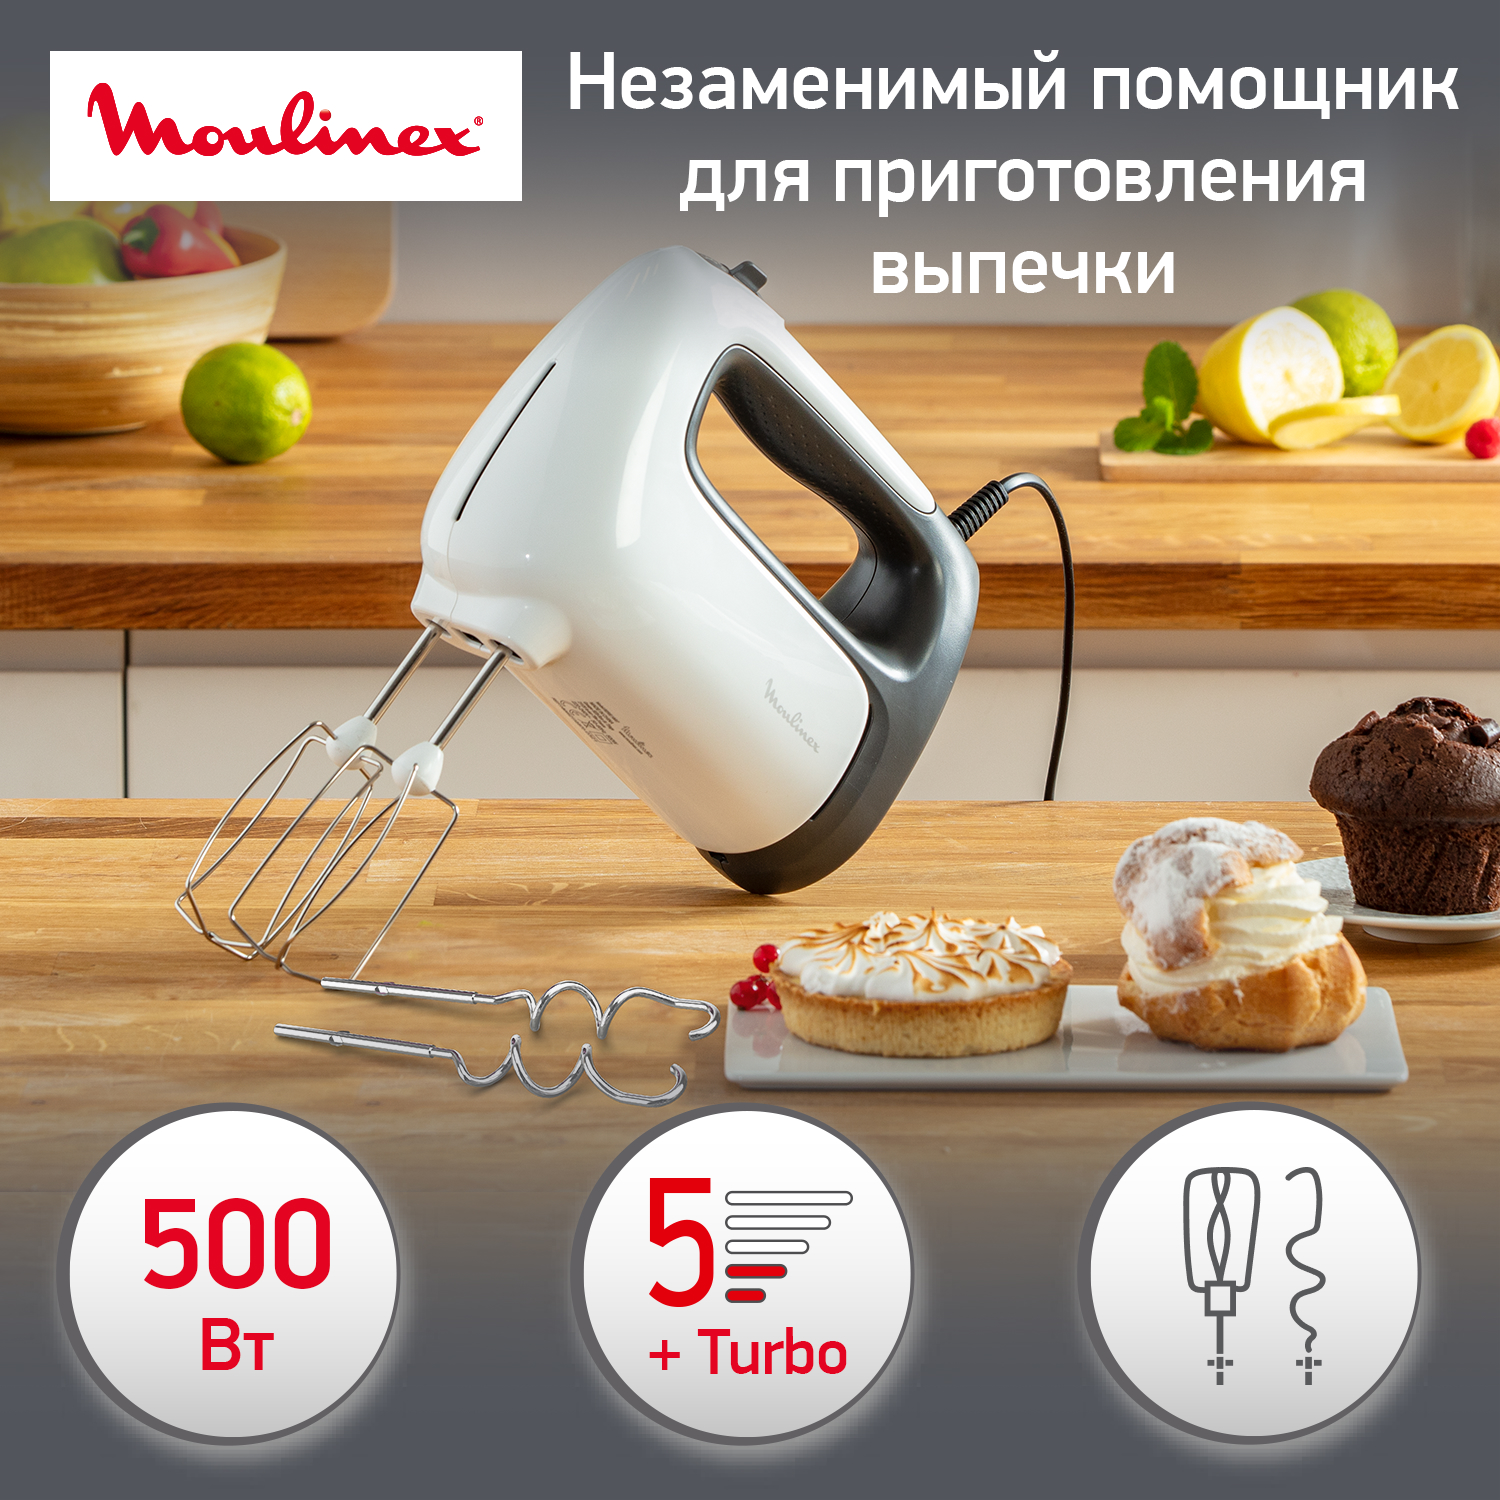 Миксер MOULINEX Prepmix+ HM460110, купить в Москве, цены в интернет-магазинах на Мегамаркет